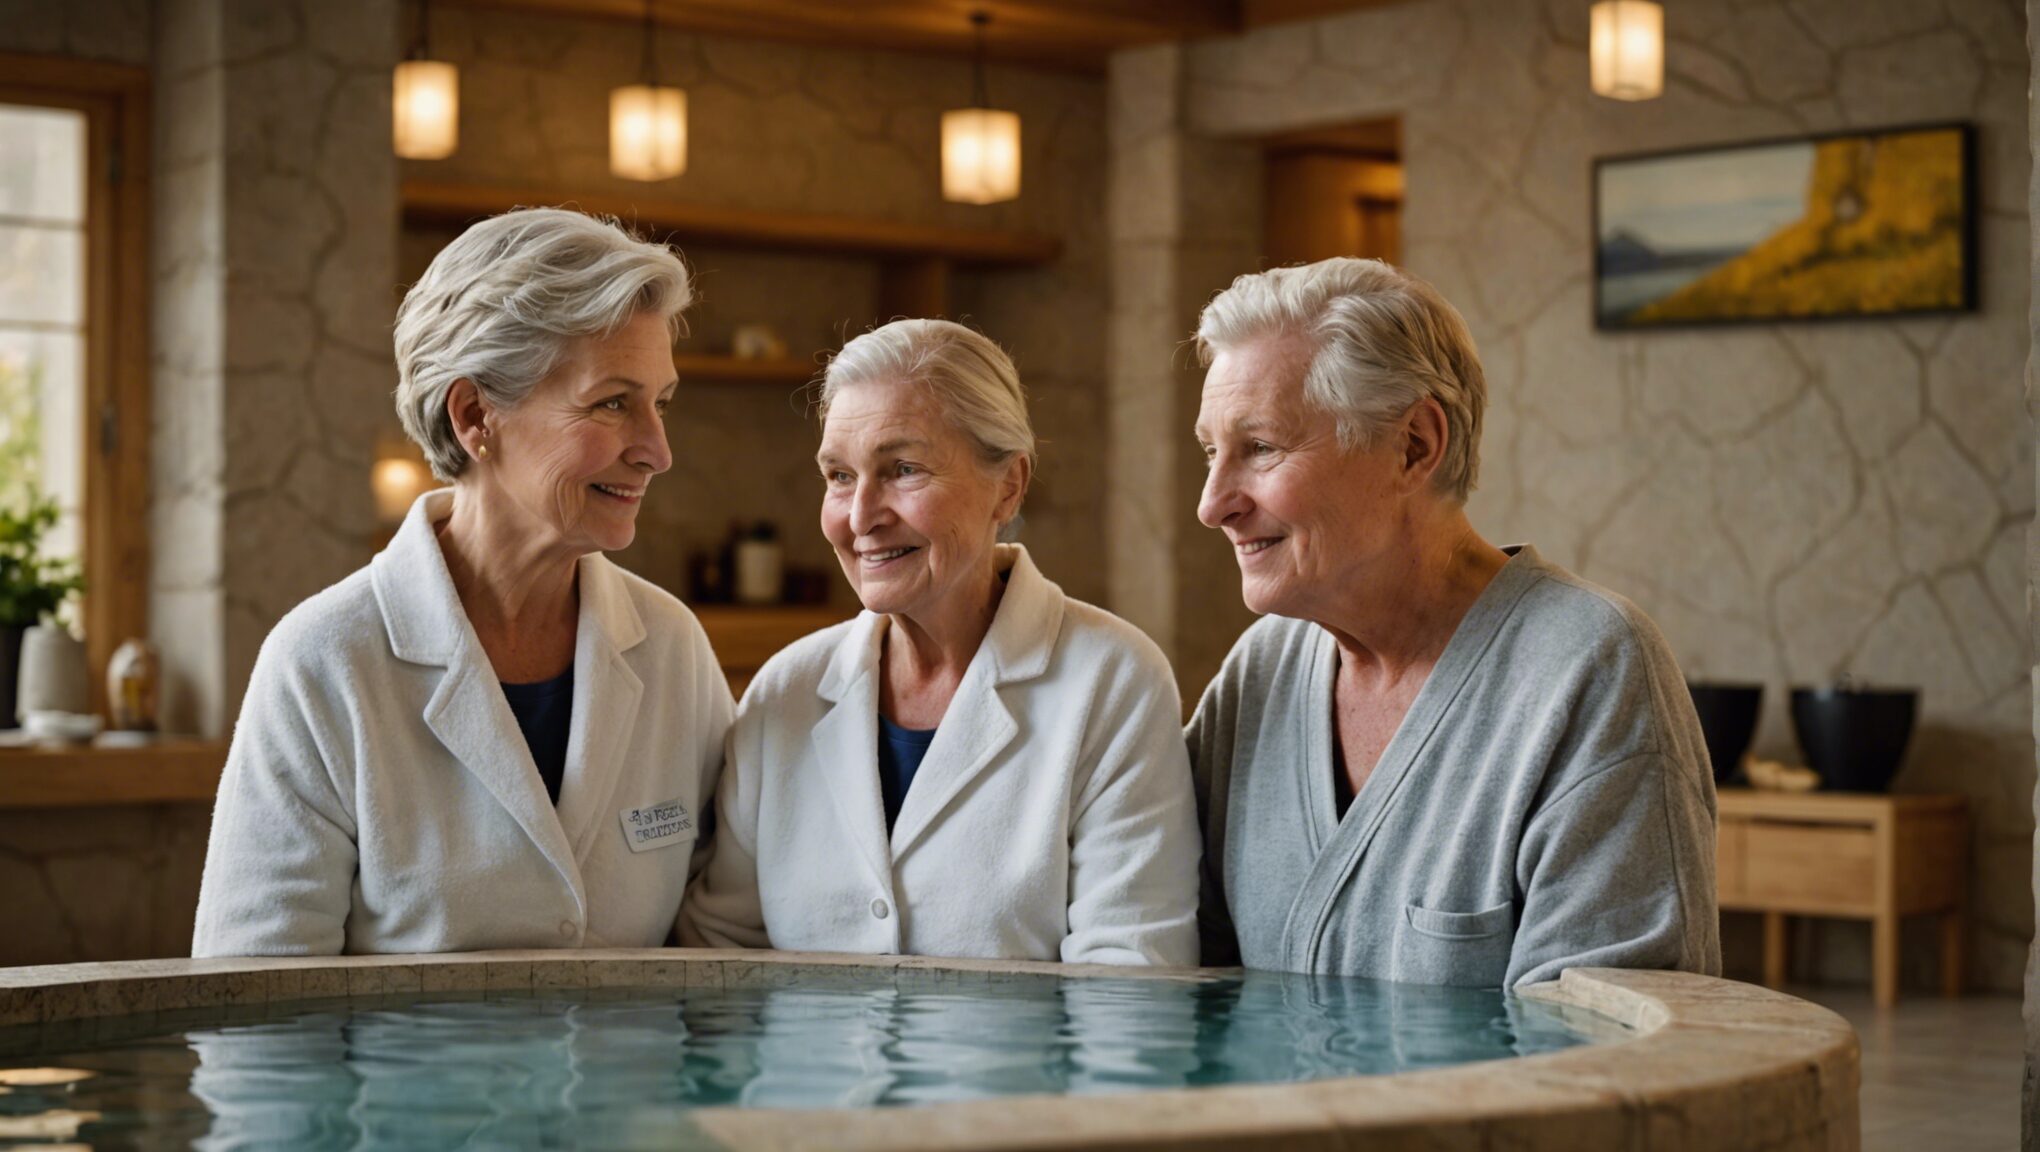 détendez-vous lors de séjours bien-être à reykjavik : profitez des meilleurs spas et soins naturels conçus pour les seniors !